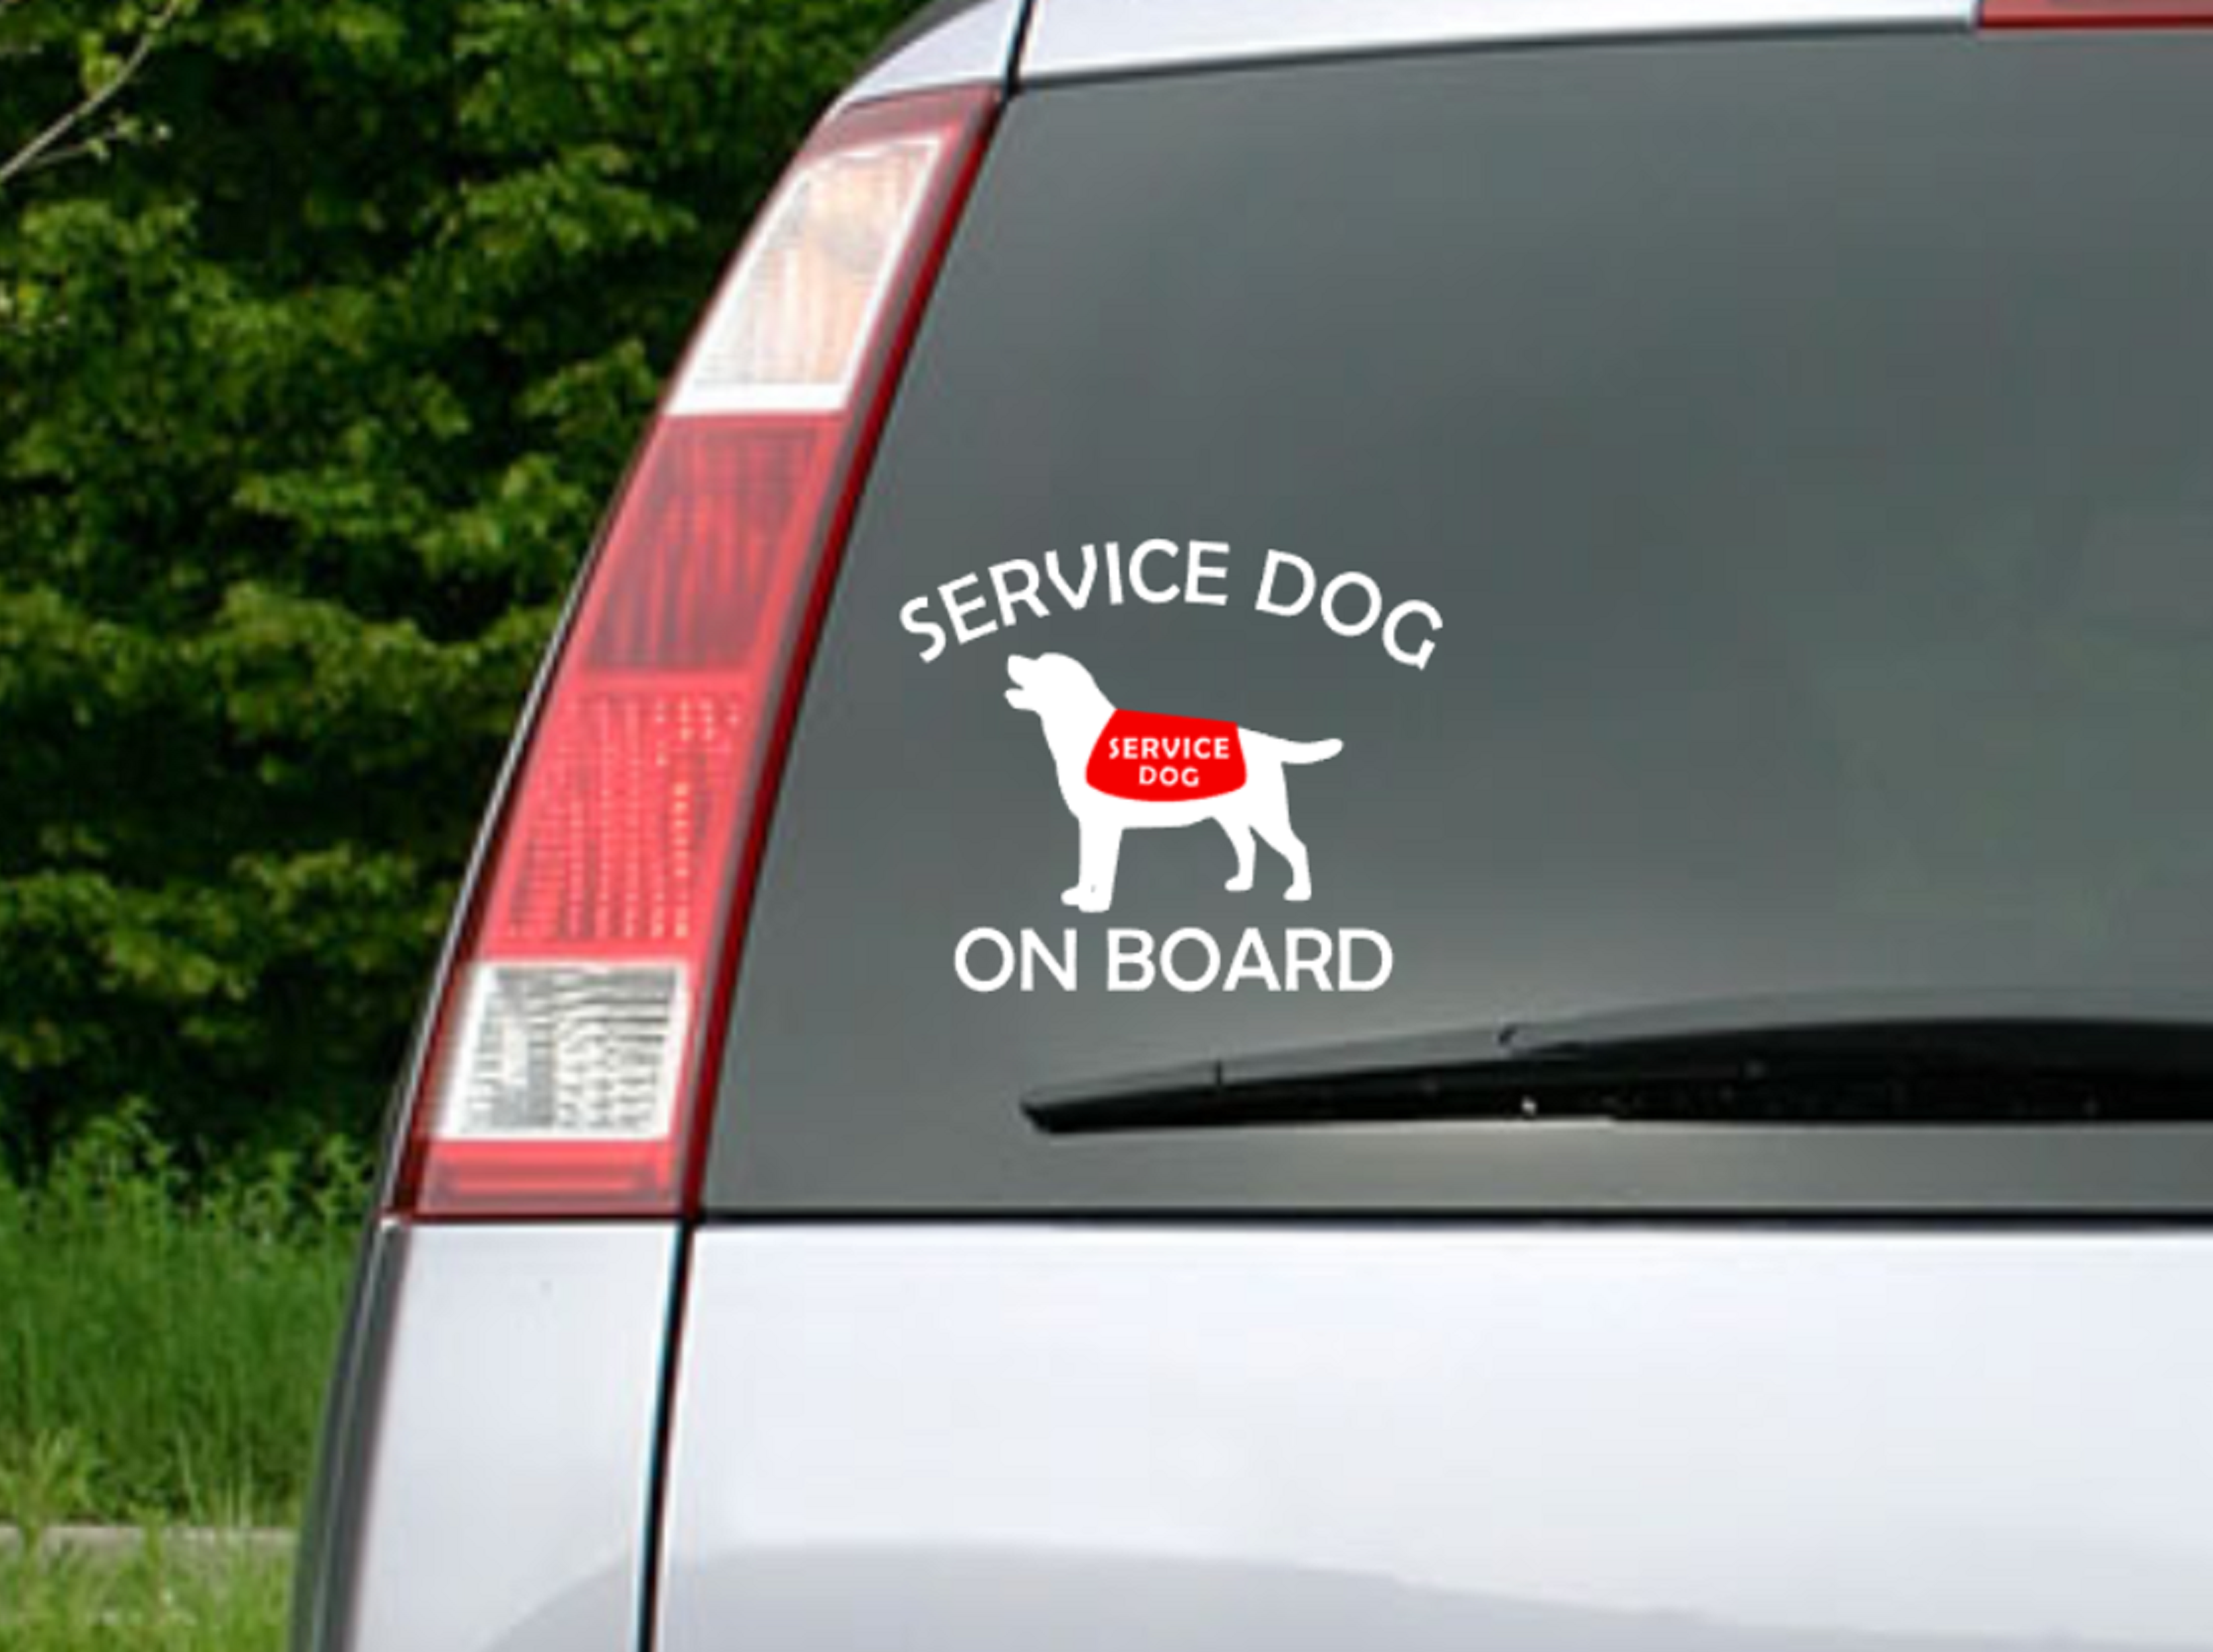 Service Dog on Board Car Sticker - My Crafty Dog